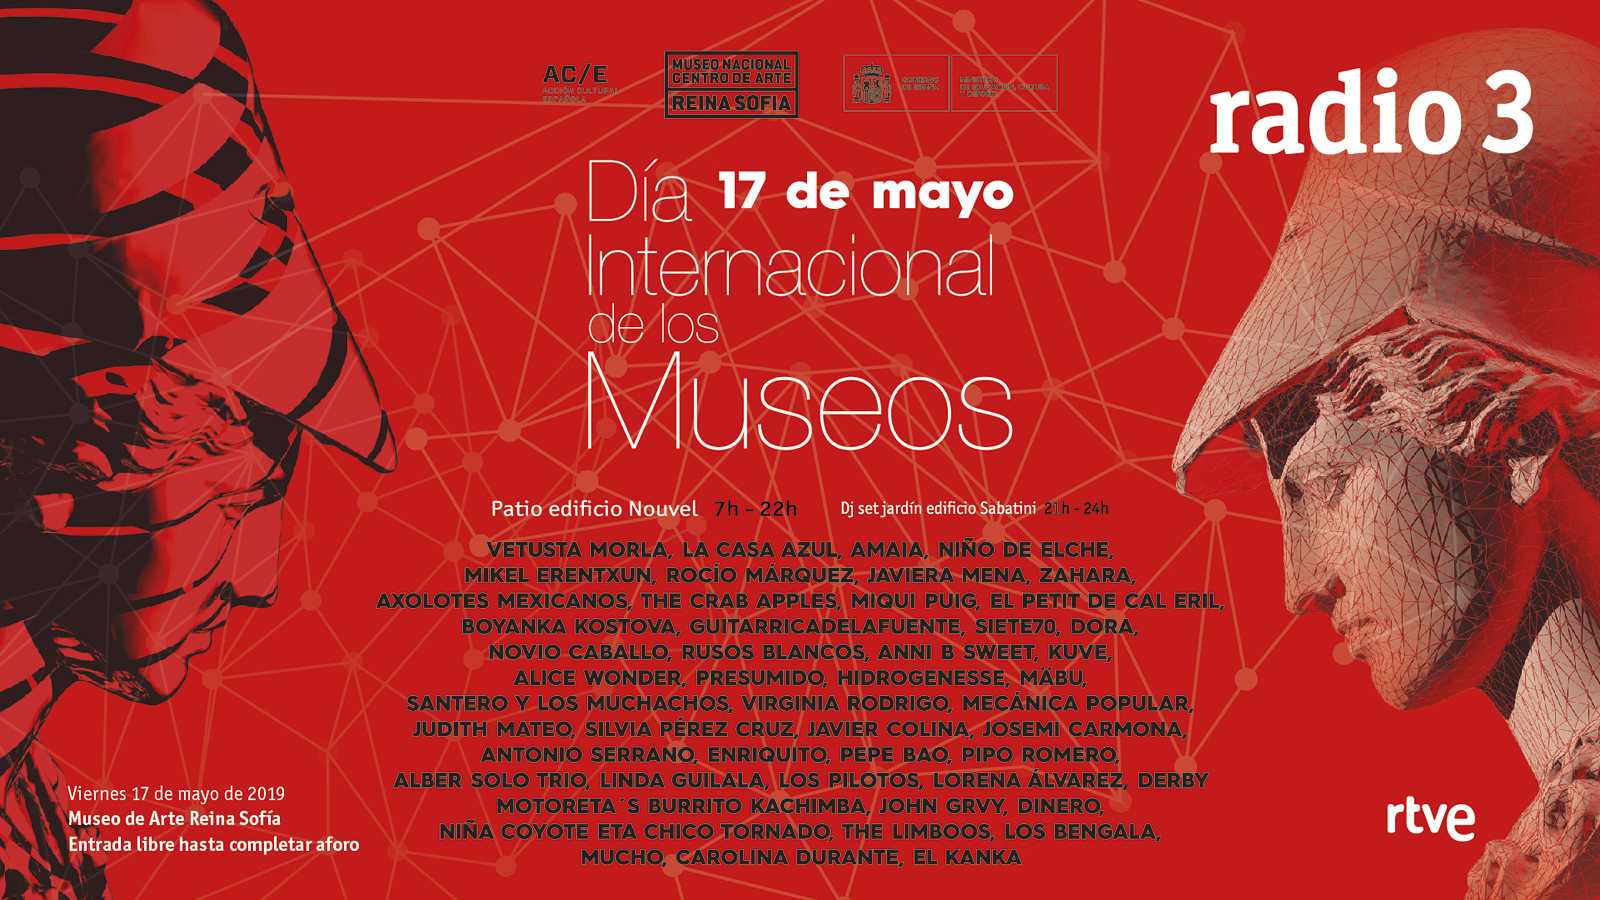 Radio 3 se une al Día Internacional de los Museos con una gran fiesta de música en directo en el Museo Reina Sofía